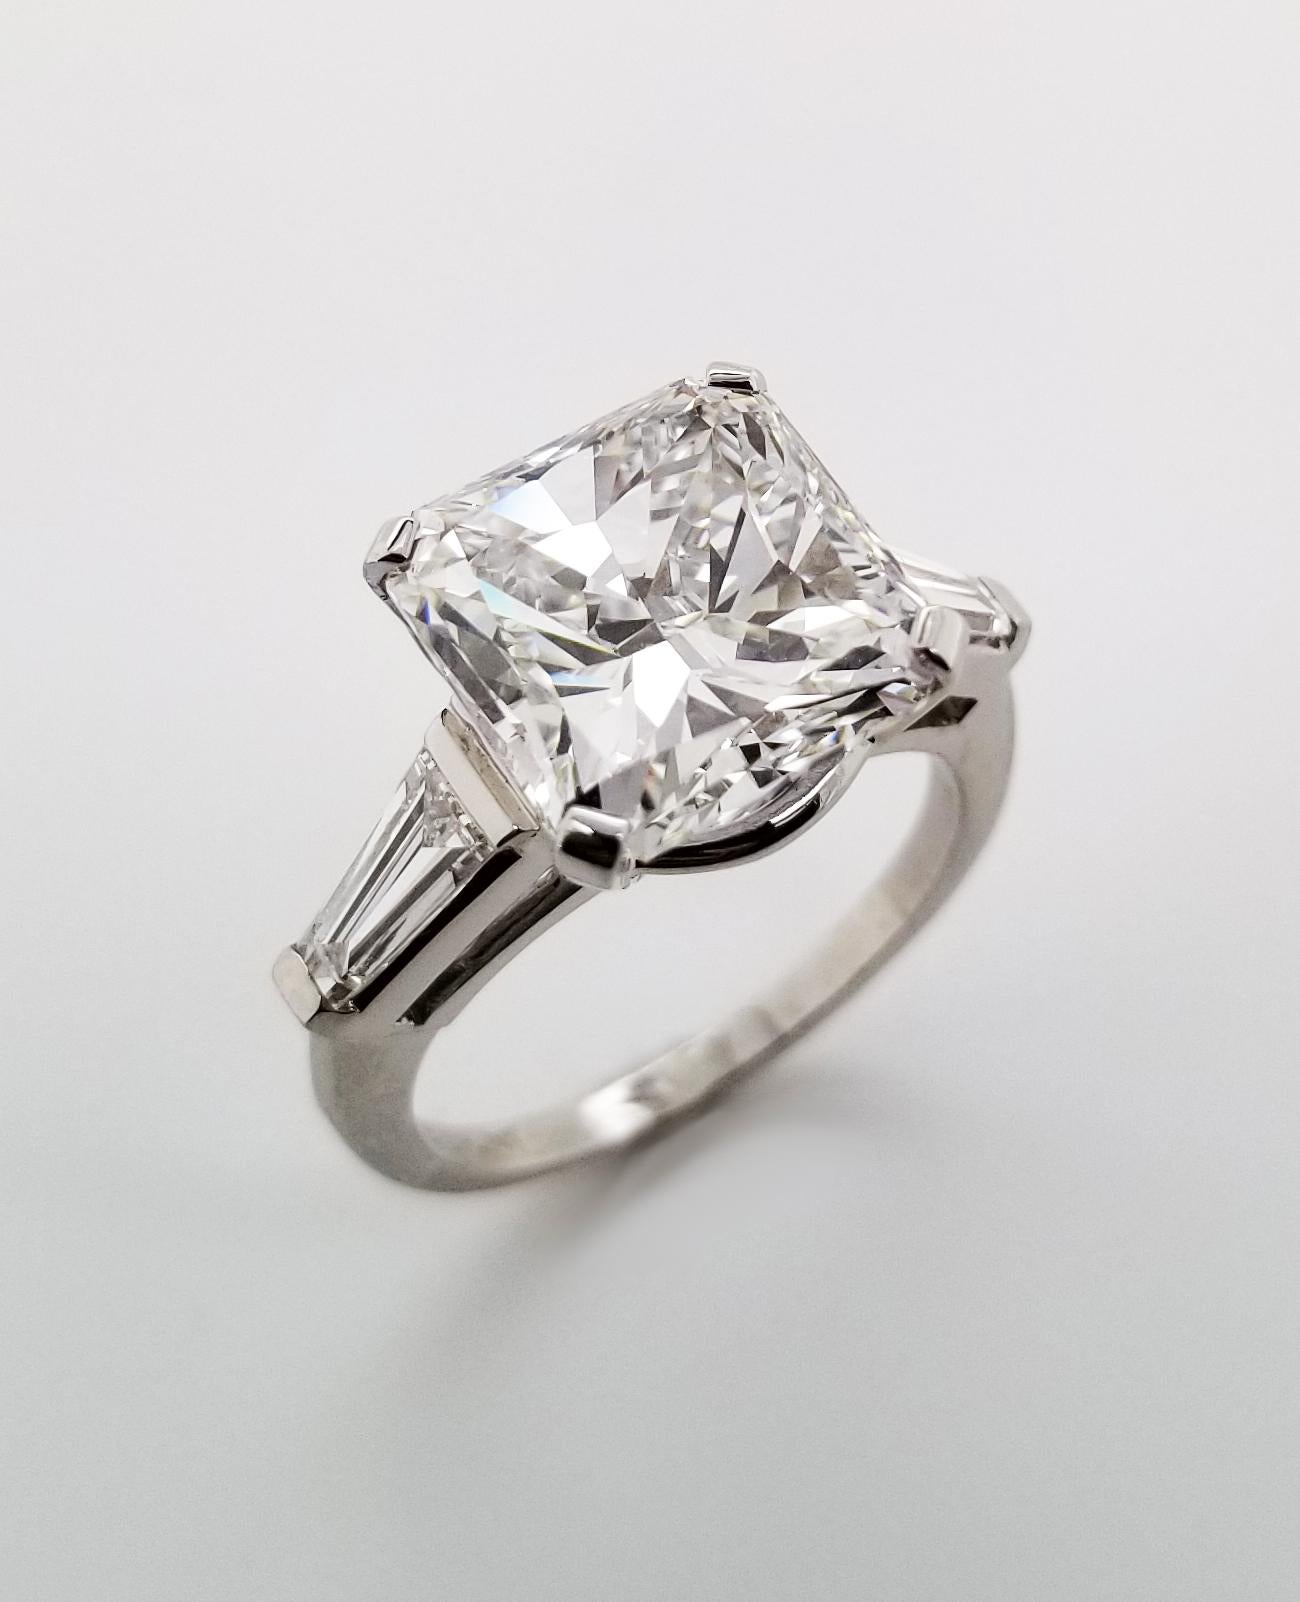 7 Carats Radiant Cut Diamond Engagement Ring in Platinum, IGI 2